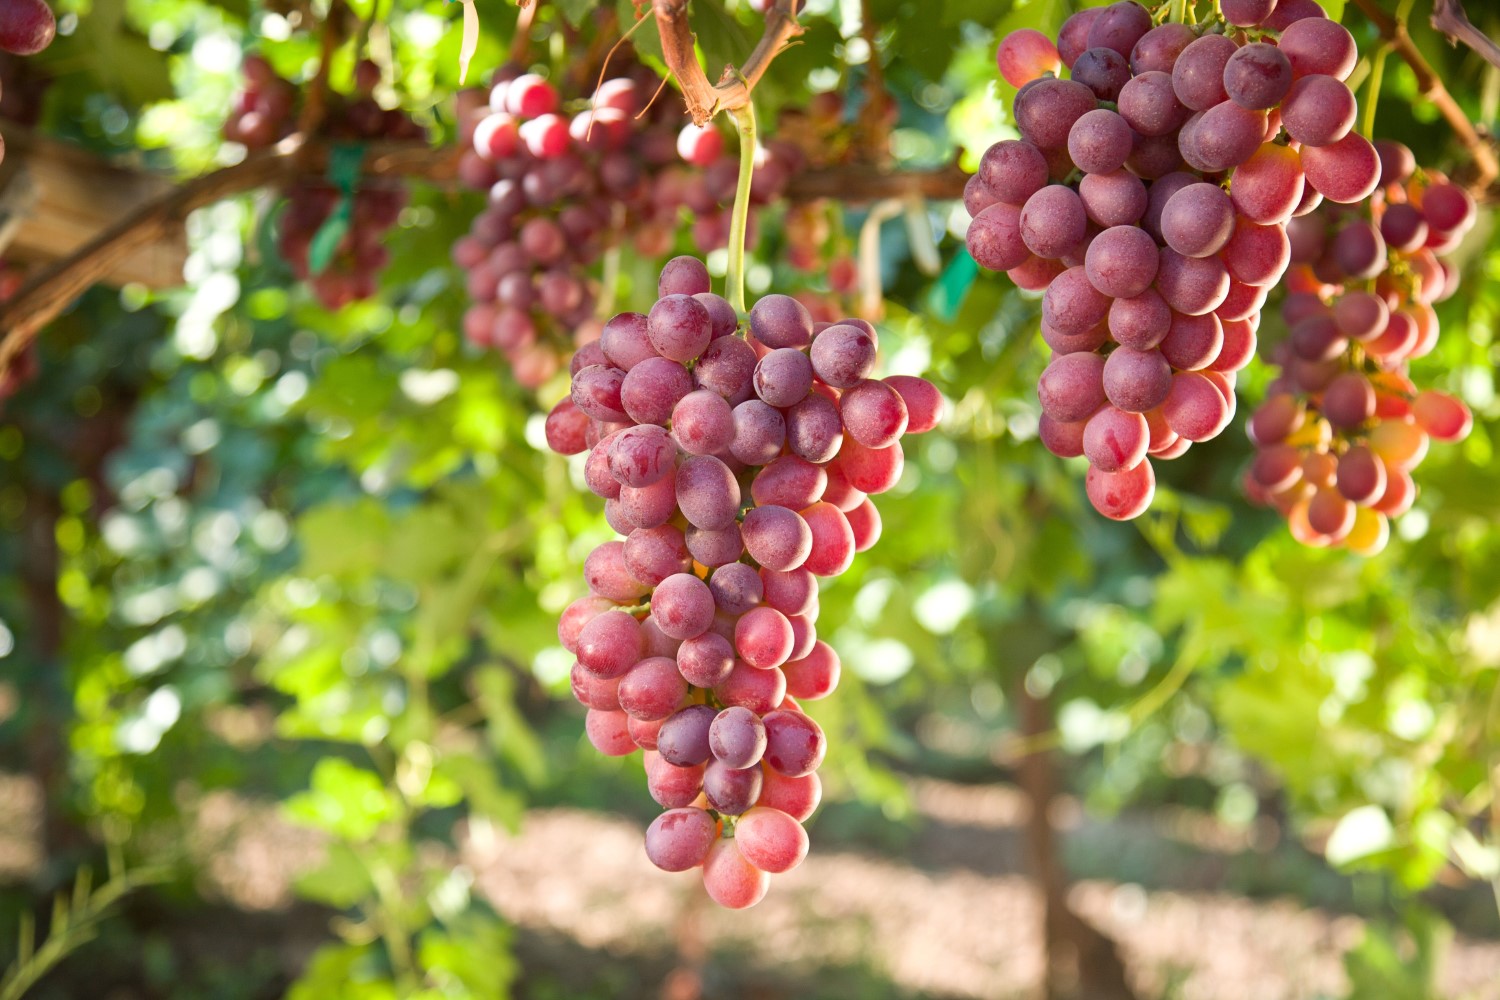 Jak i kiedy przycinać winogrona? Kluczowe terminy i techniki cięcia winorośli